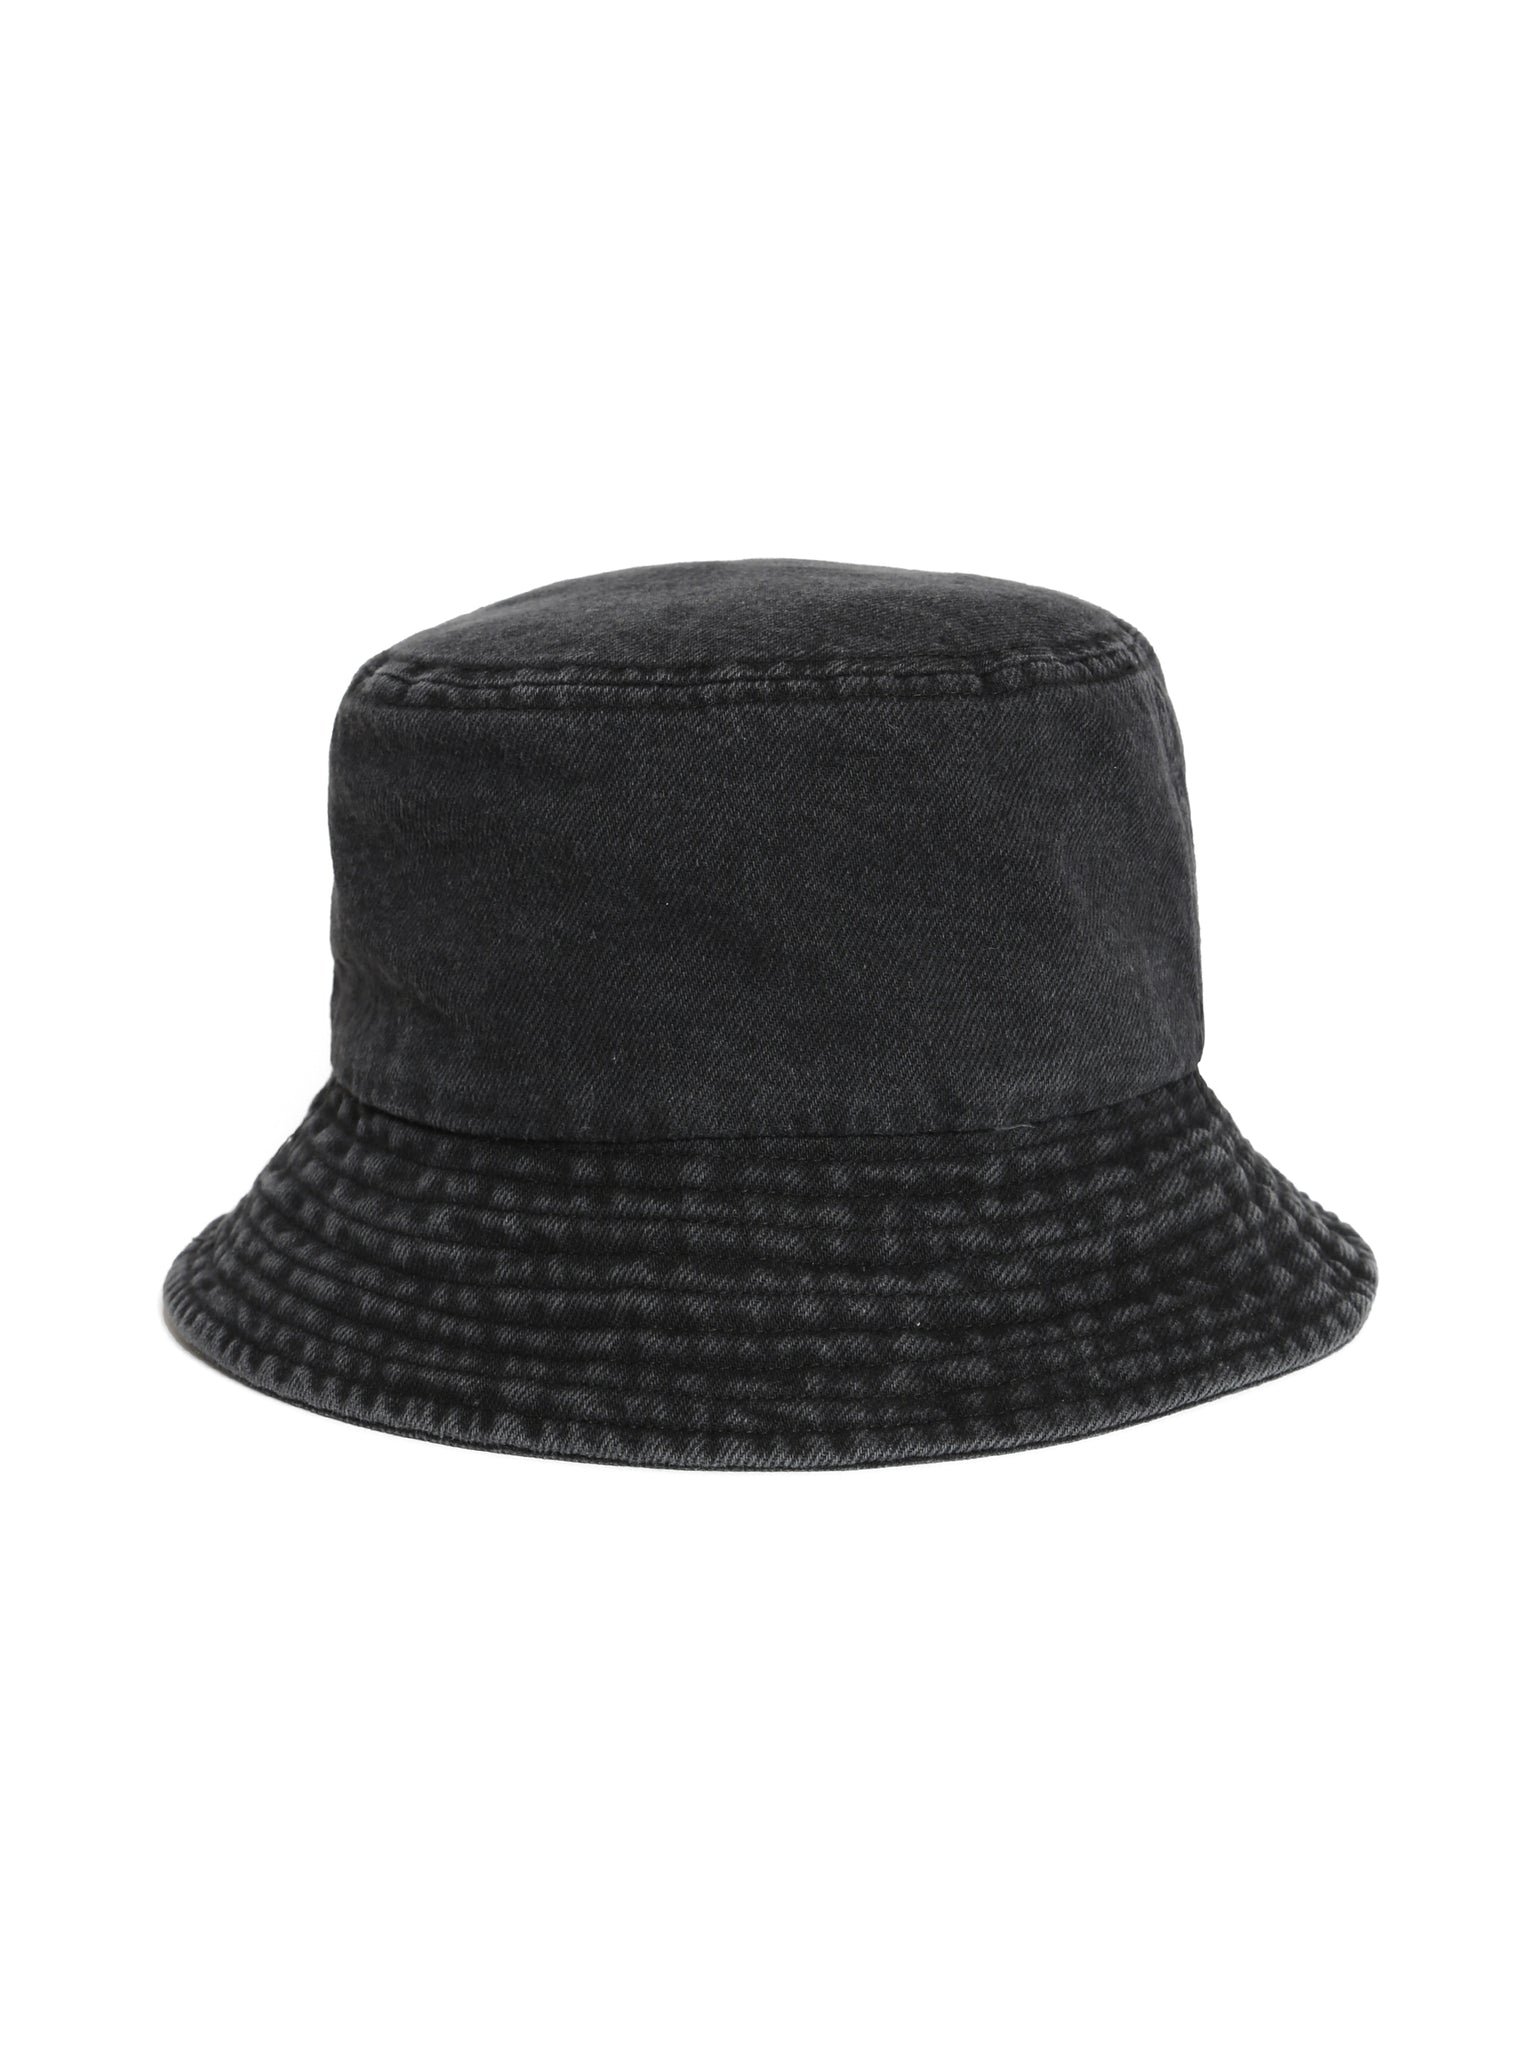 Denim Bucket Hat in Washed Indigo